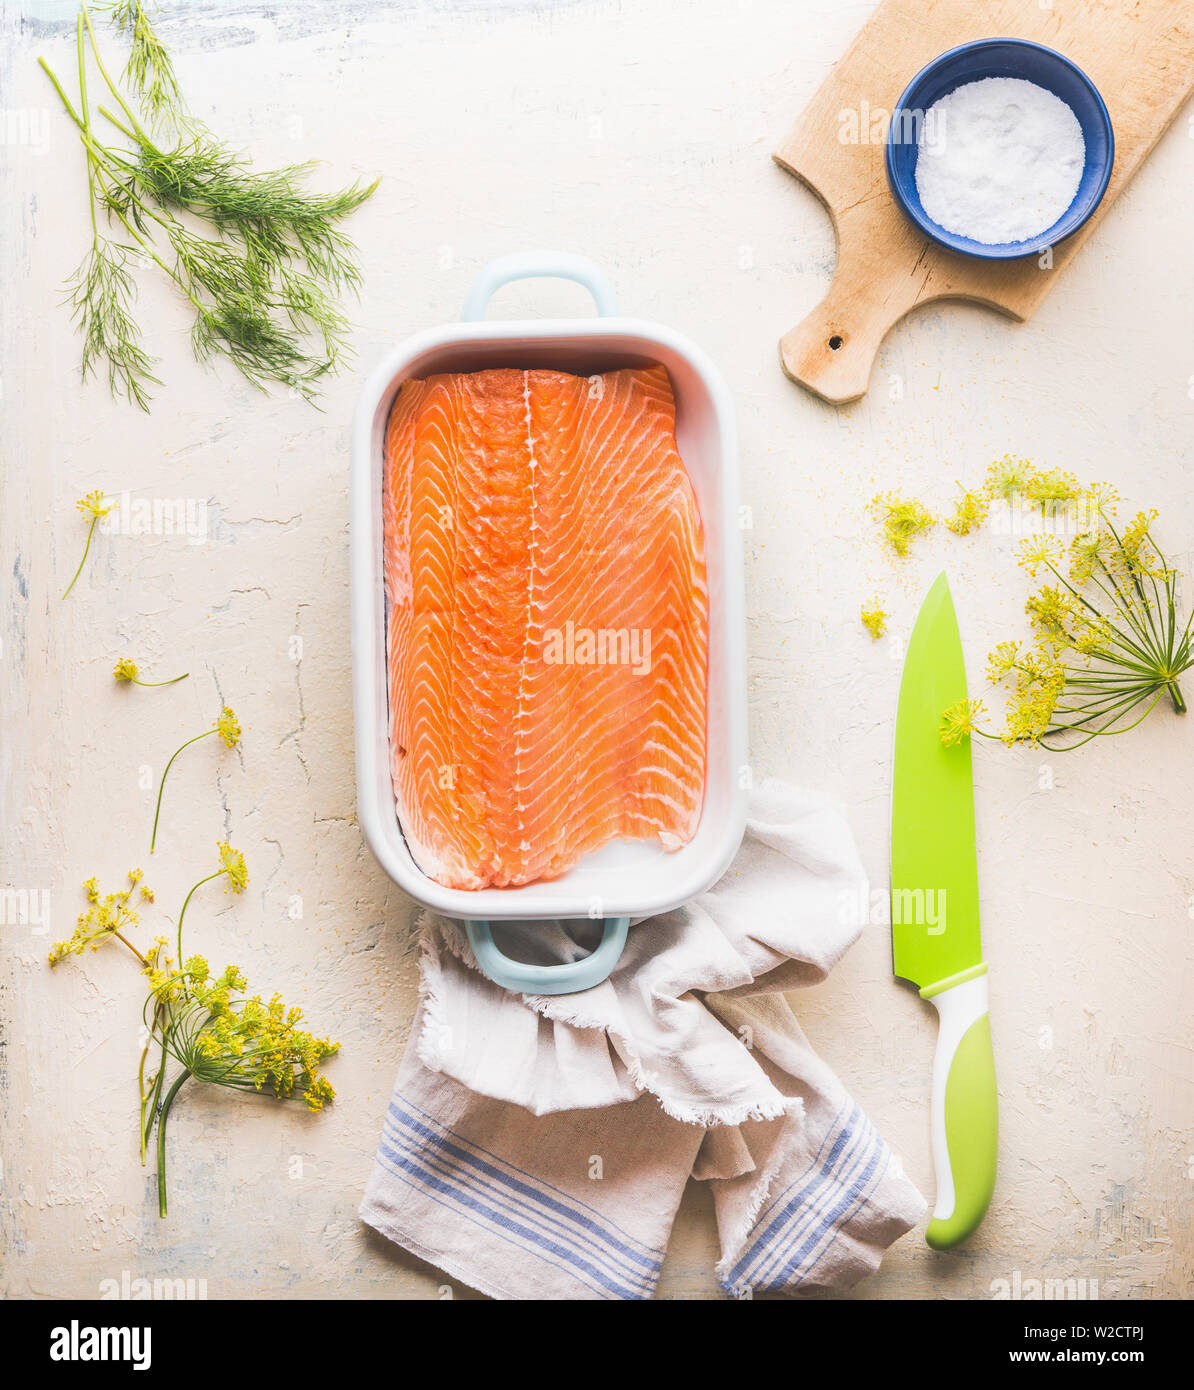 La cottura di preparazione del salmone. Materie filetto di salmone con aneto in una casseruola su sfondo bianco con tagliere e coltello da cucina, vista dall'alto. Se sano Foto Stock